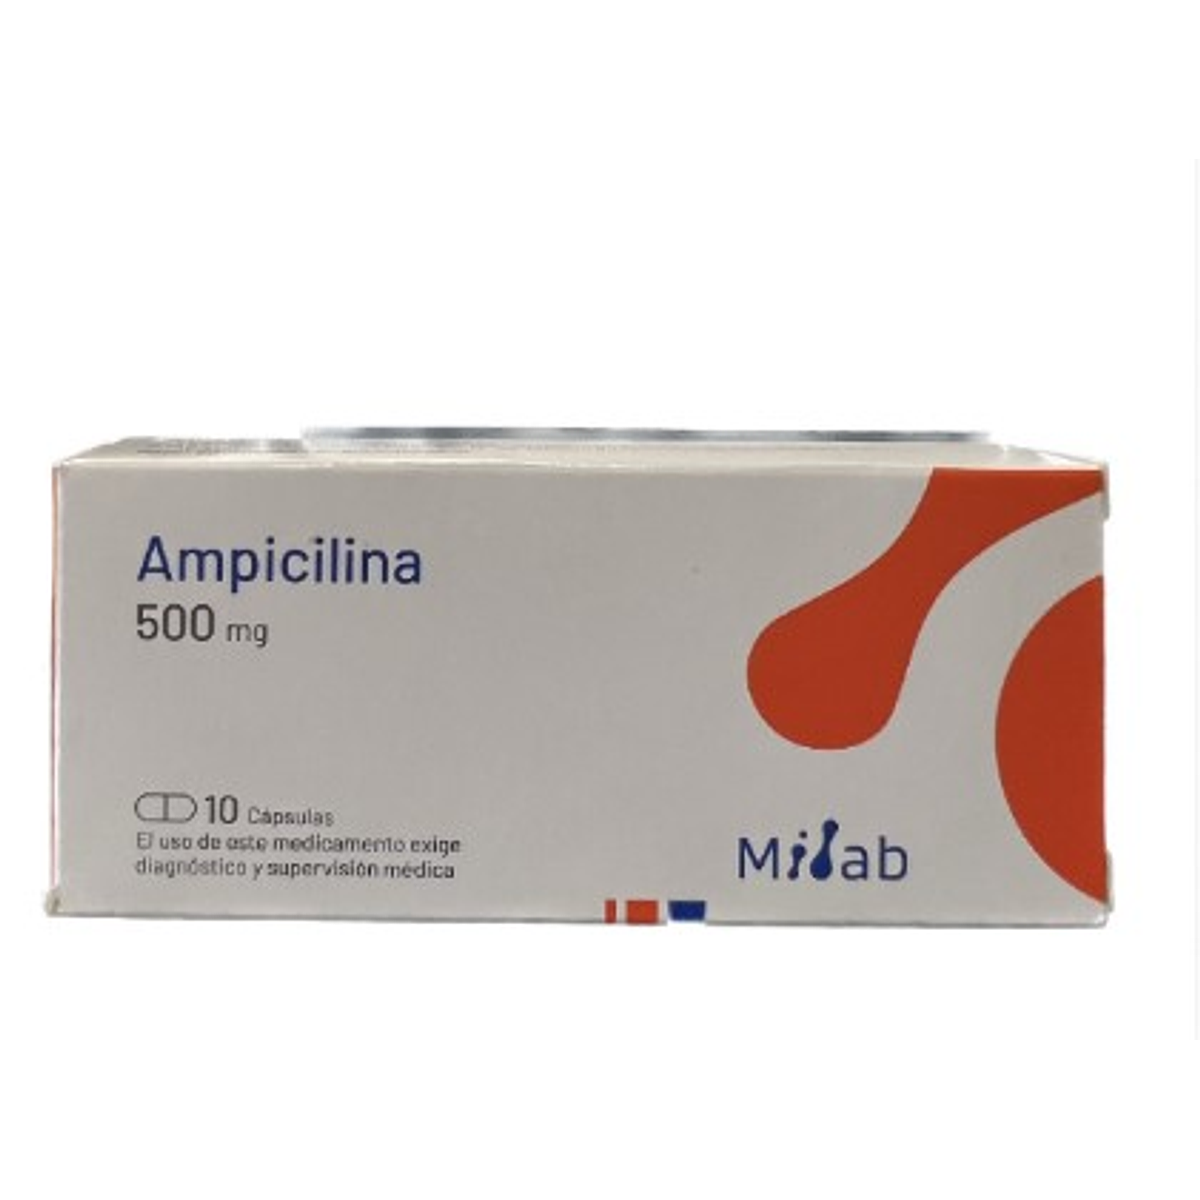 Ampicilina 500mg por 10 capsulas